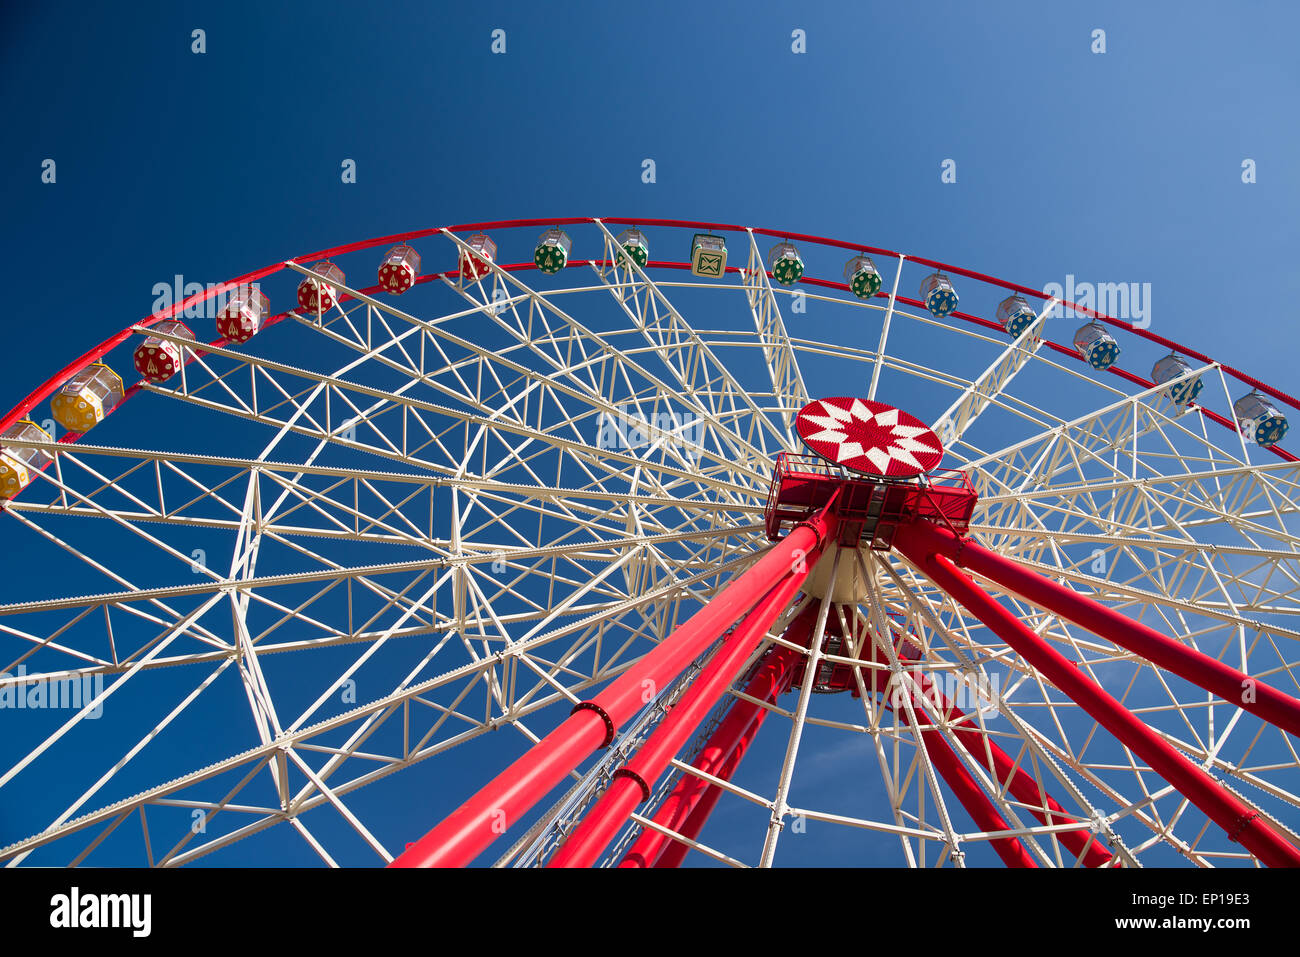 Atraktsion Ferris Wheel vor blauem Himmel mit Wolken Stockfoto